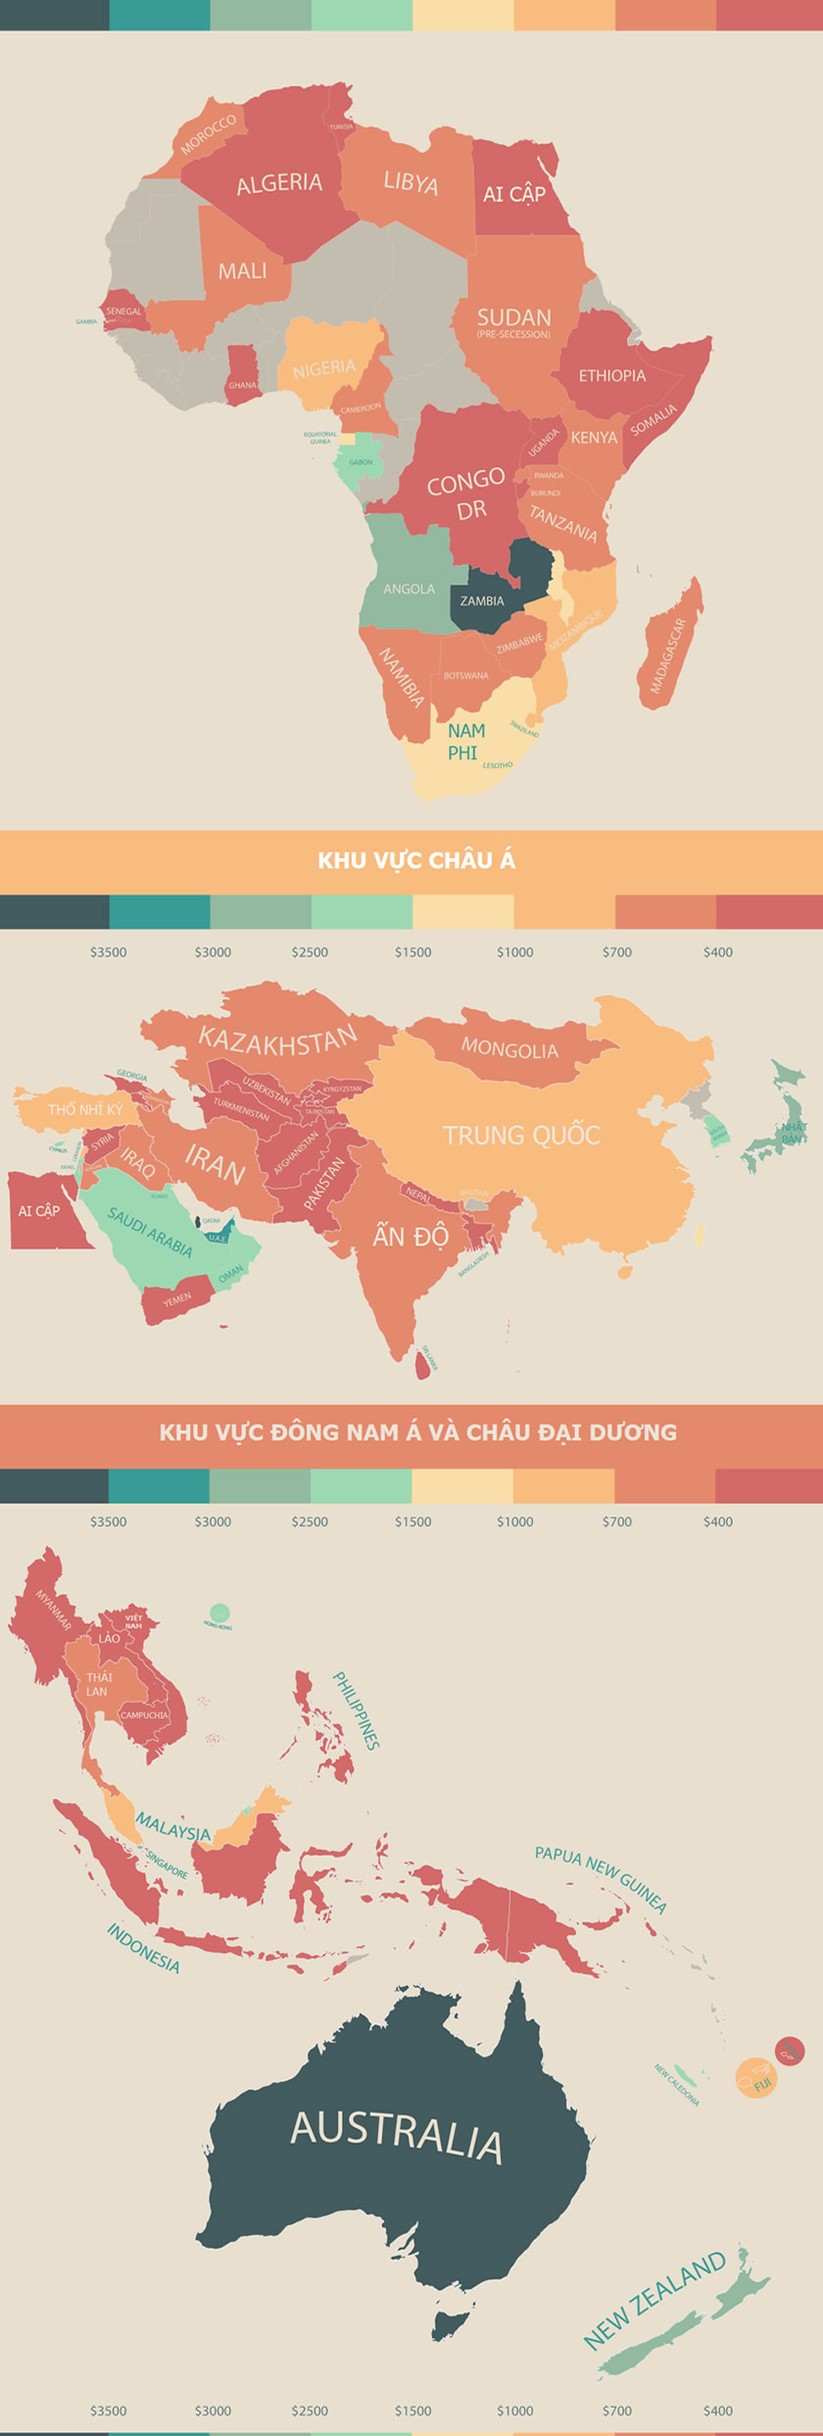 Thu nhập sau thuế của người Việt thuộc hạng thấp nhất thế giới? ảnh 3